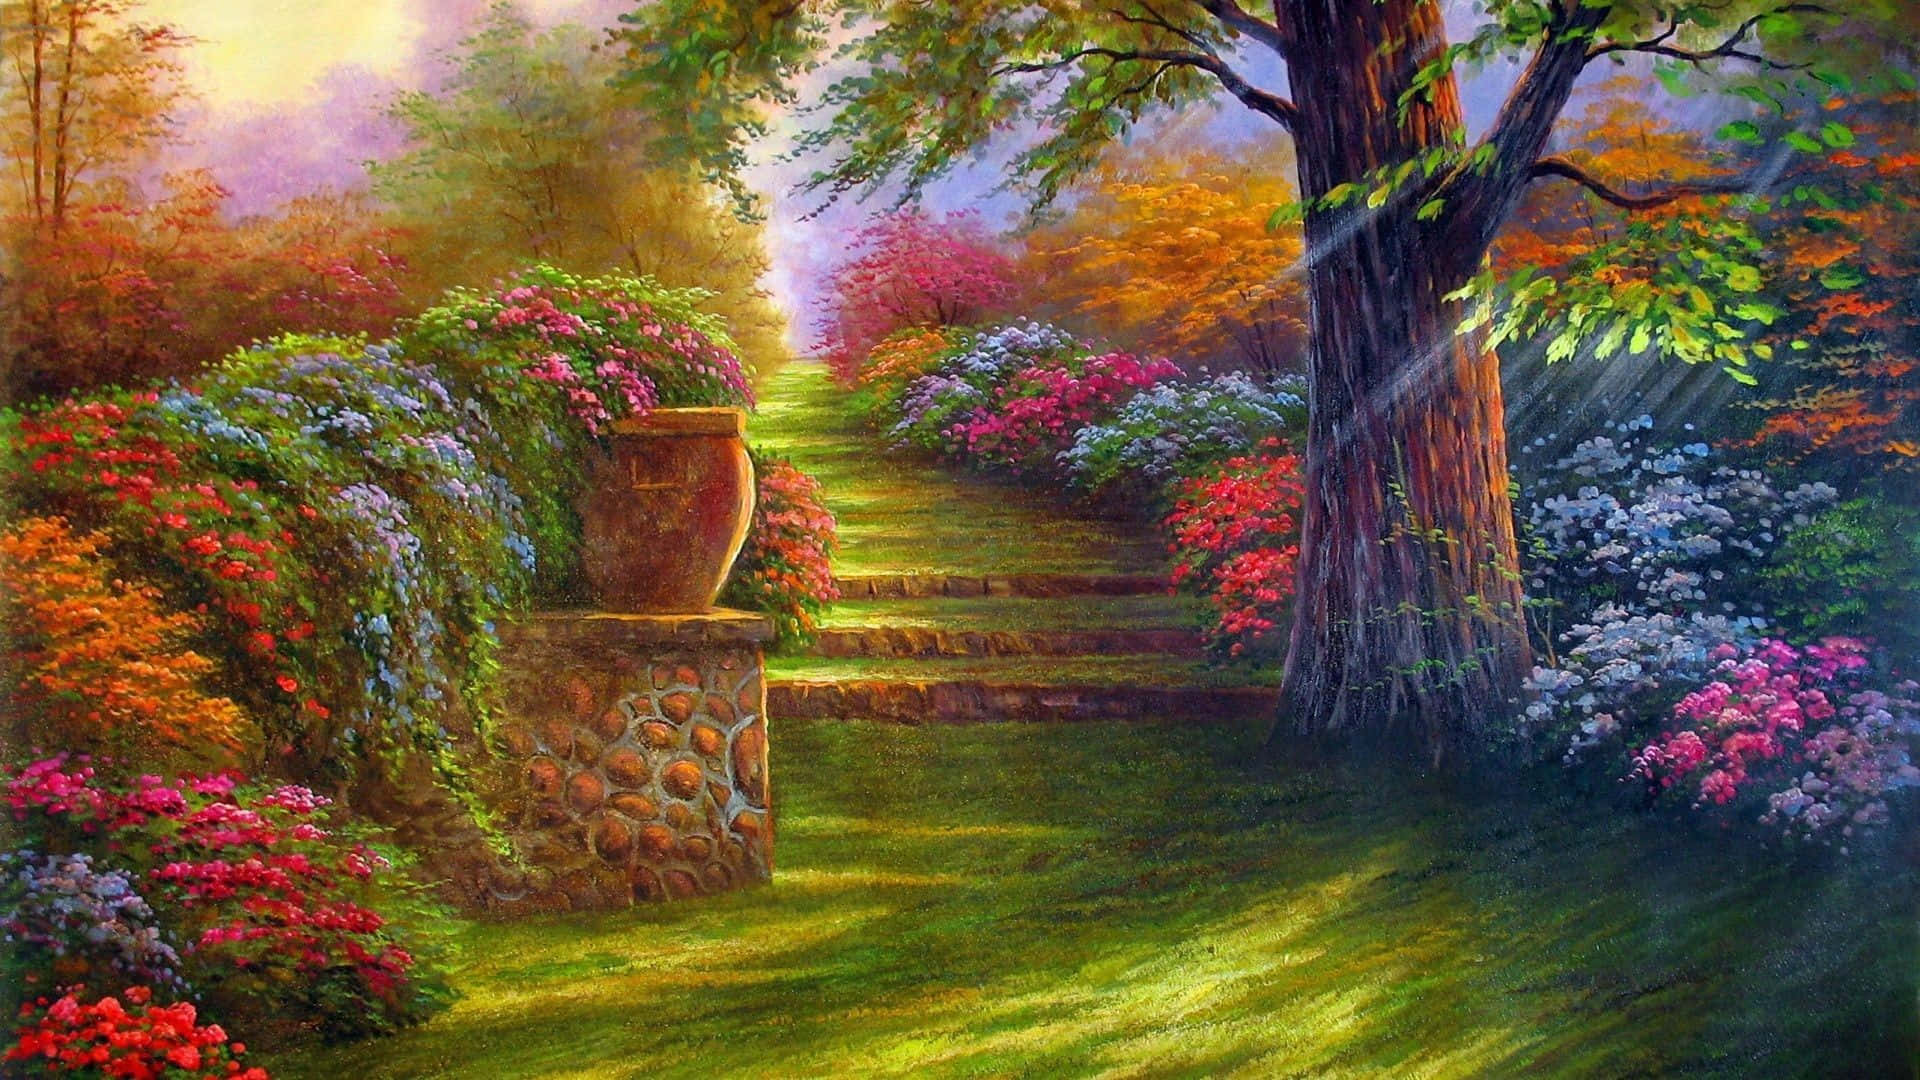 Enchanted Garden Scenery Wallpaper